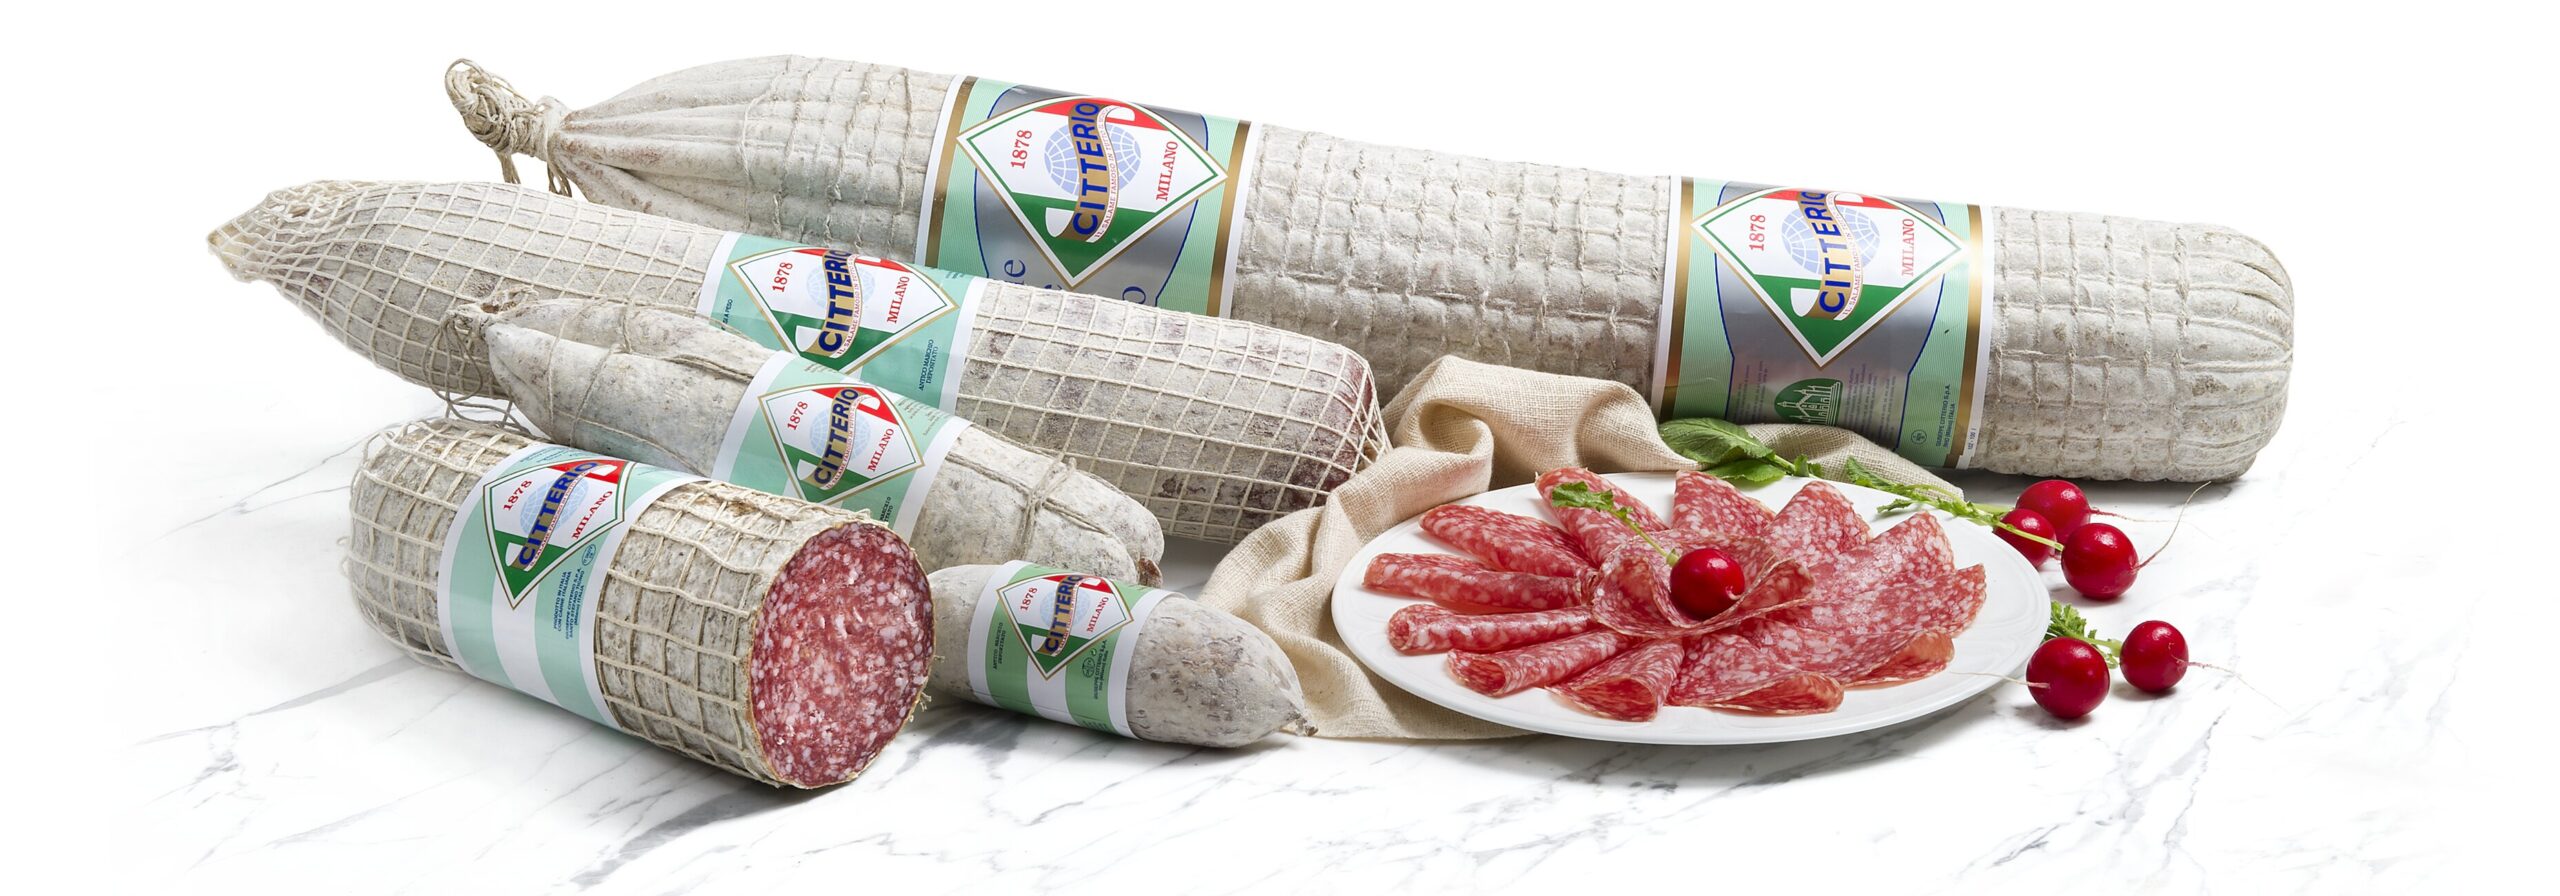 Lebensmittelimport von Citterio Produkten | Bonizzi Alberto AG